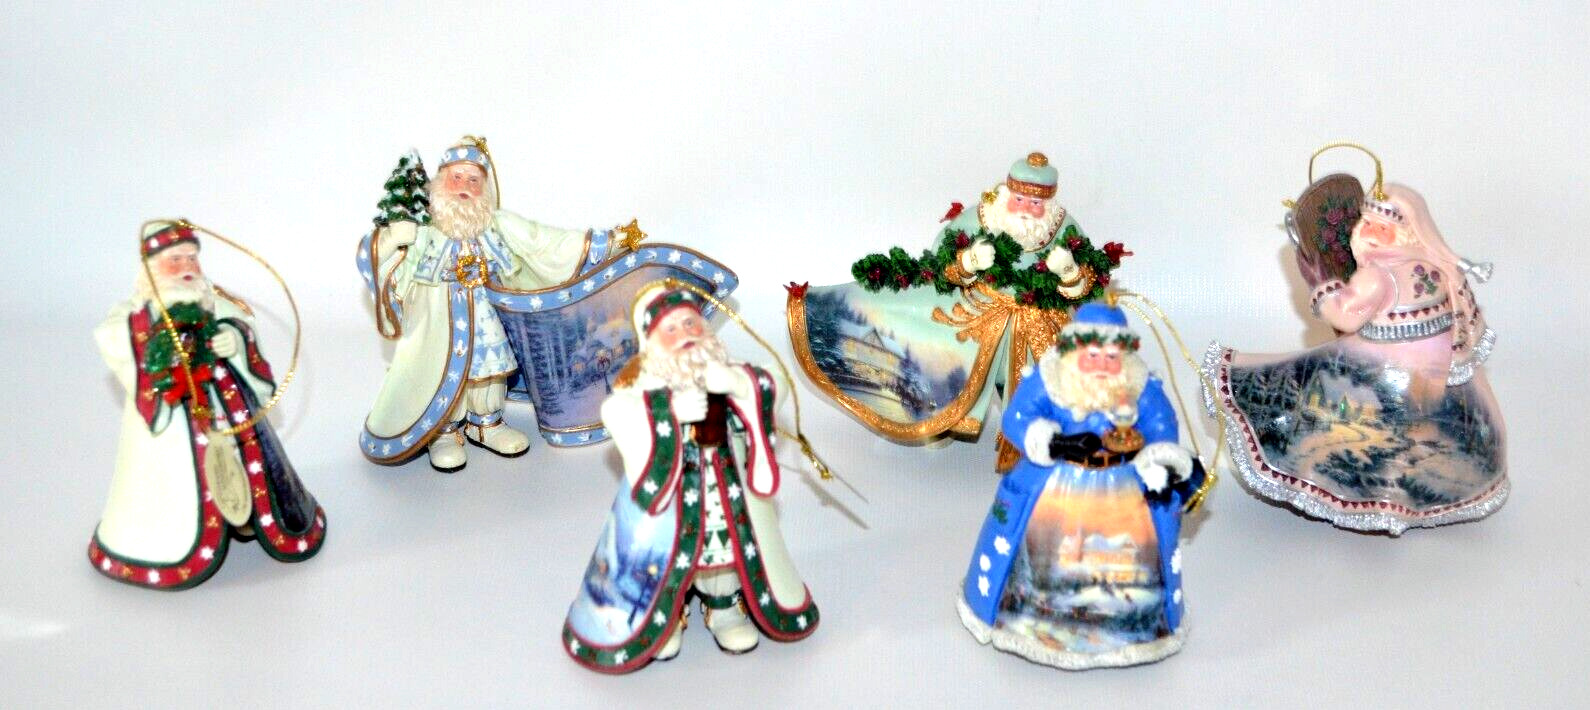 6 Vintage Ashton Drake Thomas Kinkade Old World Santa Ornaments 2003